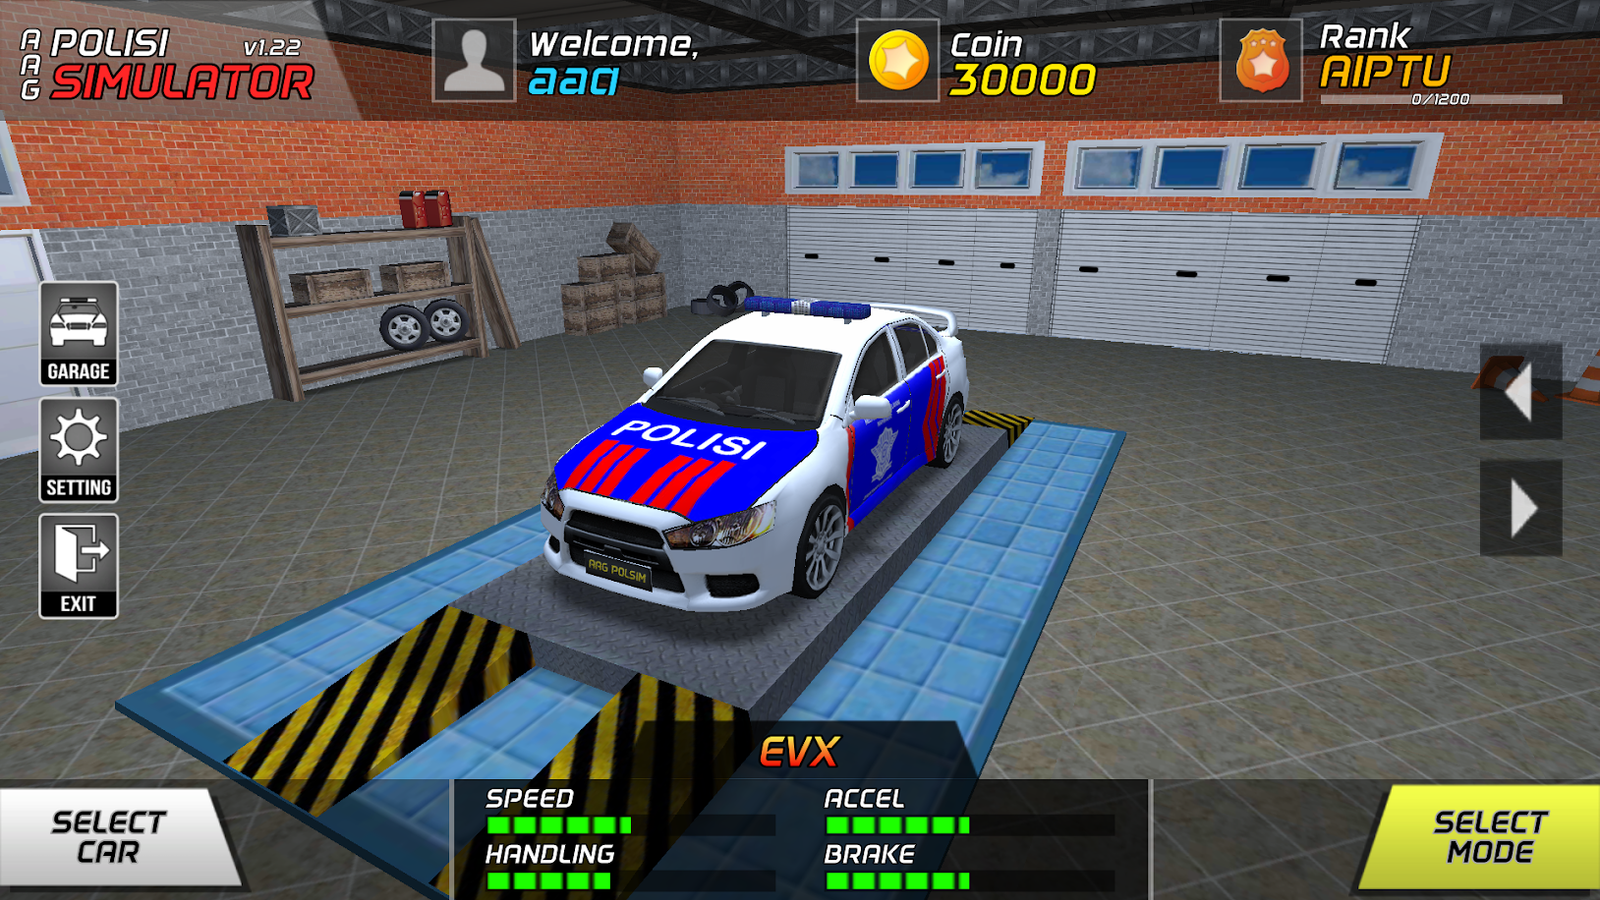 AAG Police Simulator